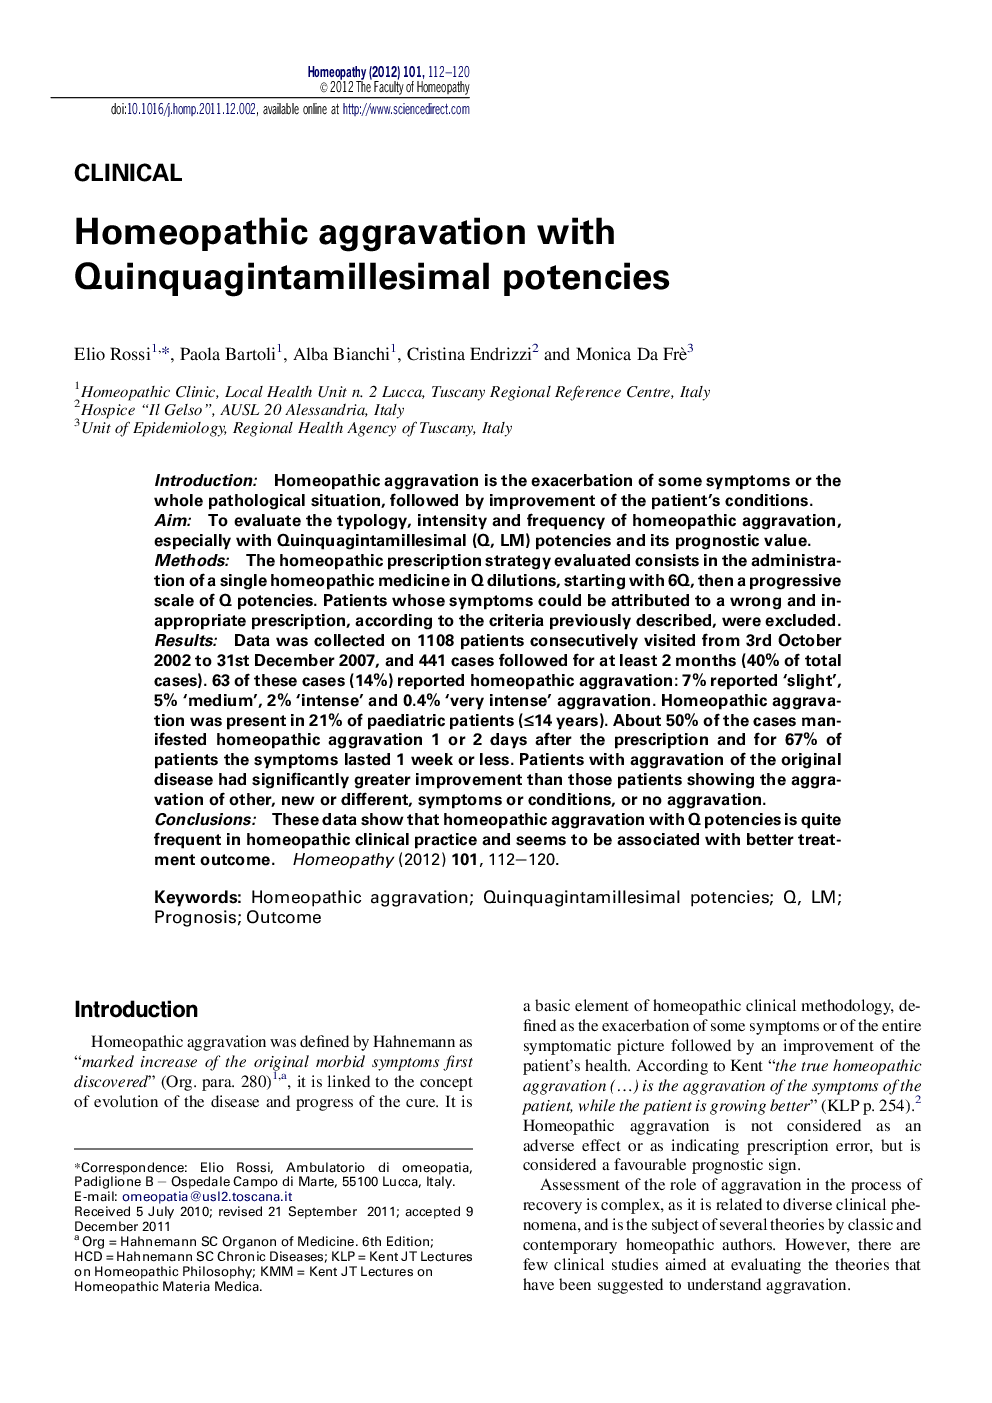 Homeopathic aggravation with Quinquagintamillesimal potencies